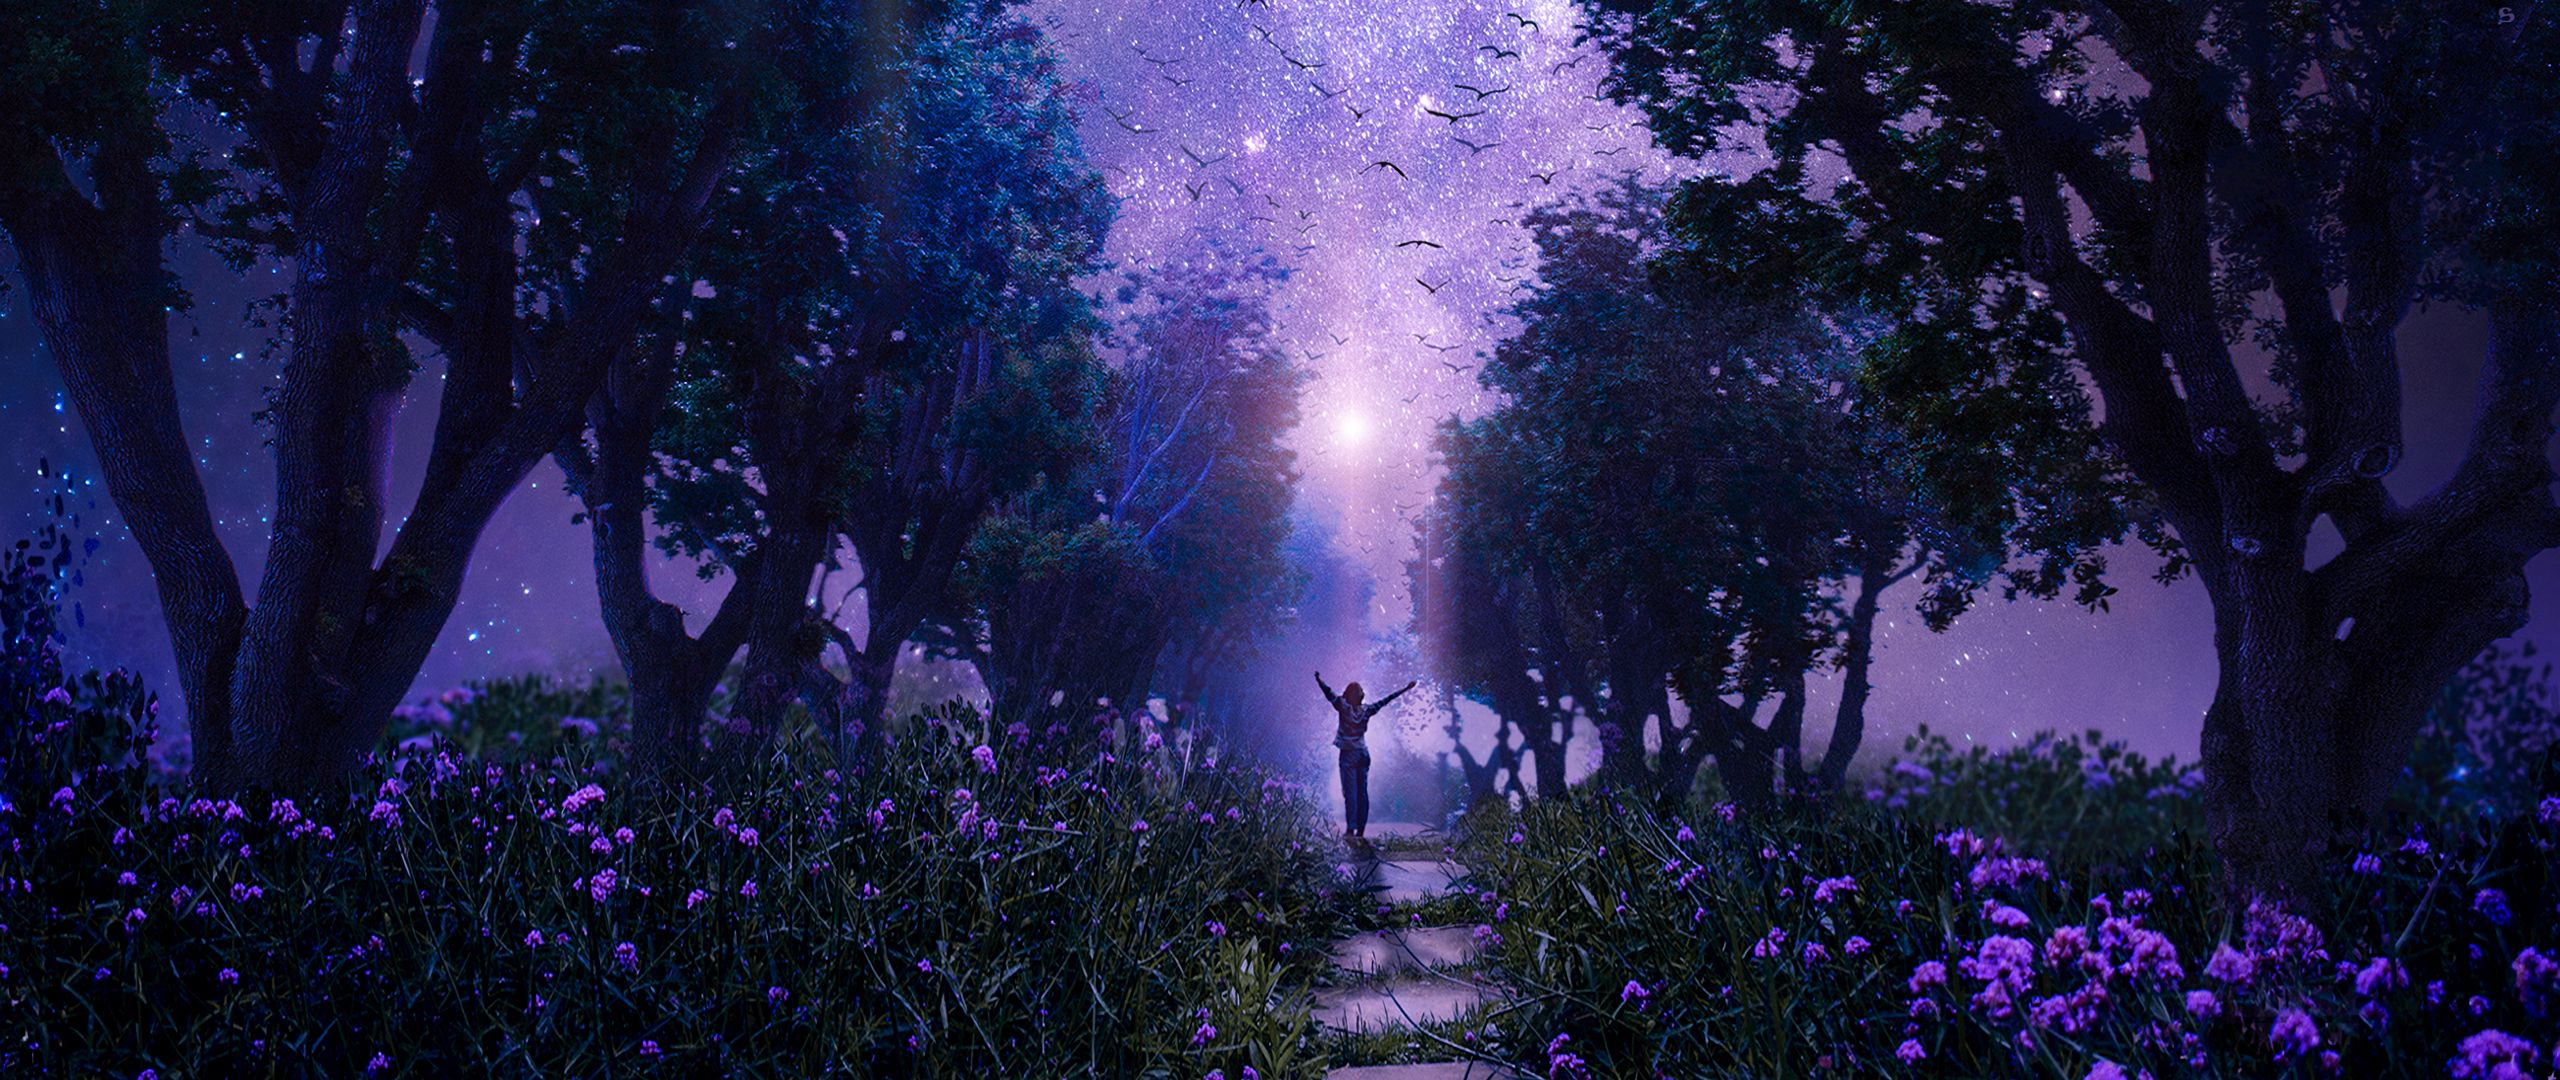 Hình nền rừng đêm tím: Hình nền rừng đêm tím đầy ấn tượng mô tả một không gian hoang dã nhưng cũng thật bí mật. Hãy tận hưởng cuộc phiêu lưu của bạn với hình nền đẹp này trên thiết bị của mình.